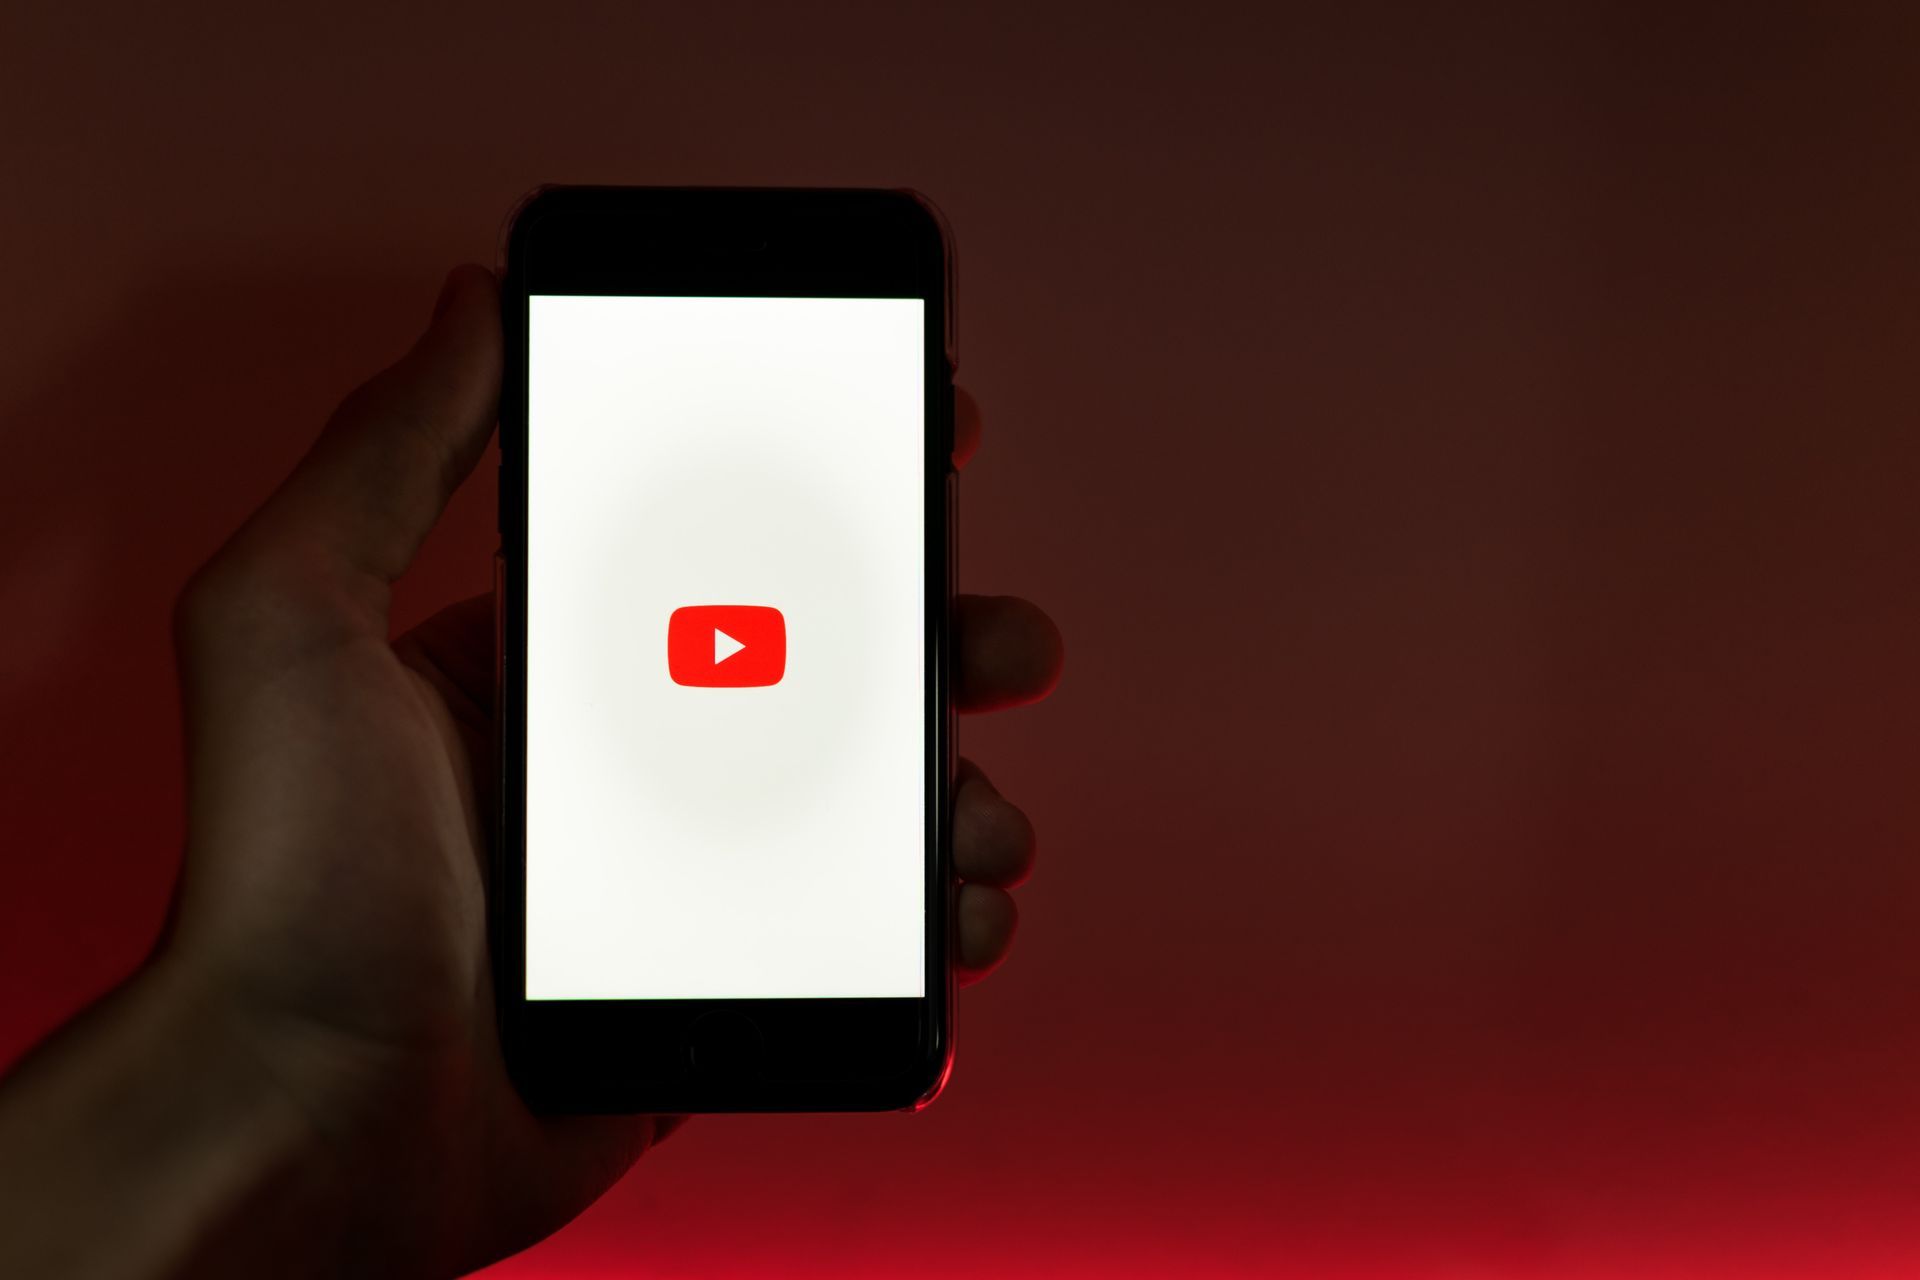 2023년 YouTube 프리미엄 가격 인상: 구독자를 위한 다음 단계(이미지 크레딧)